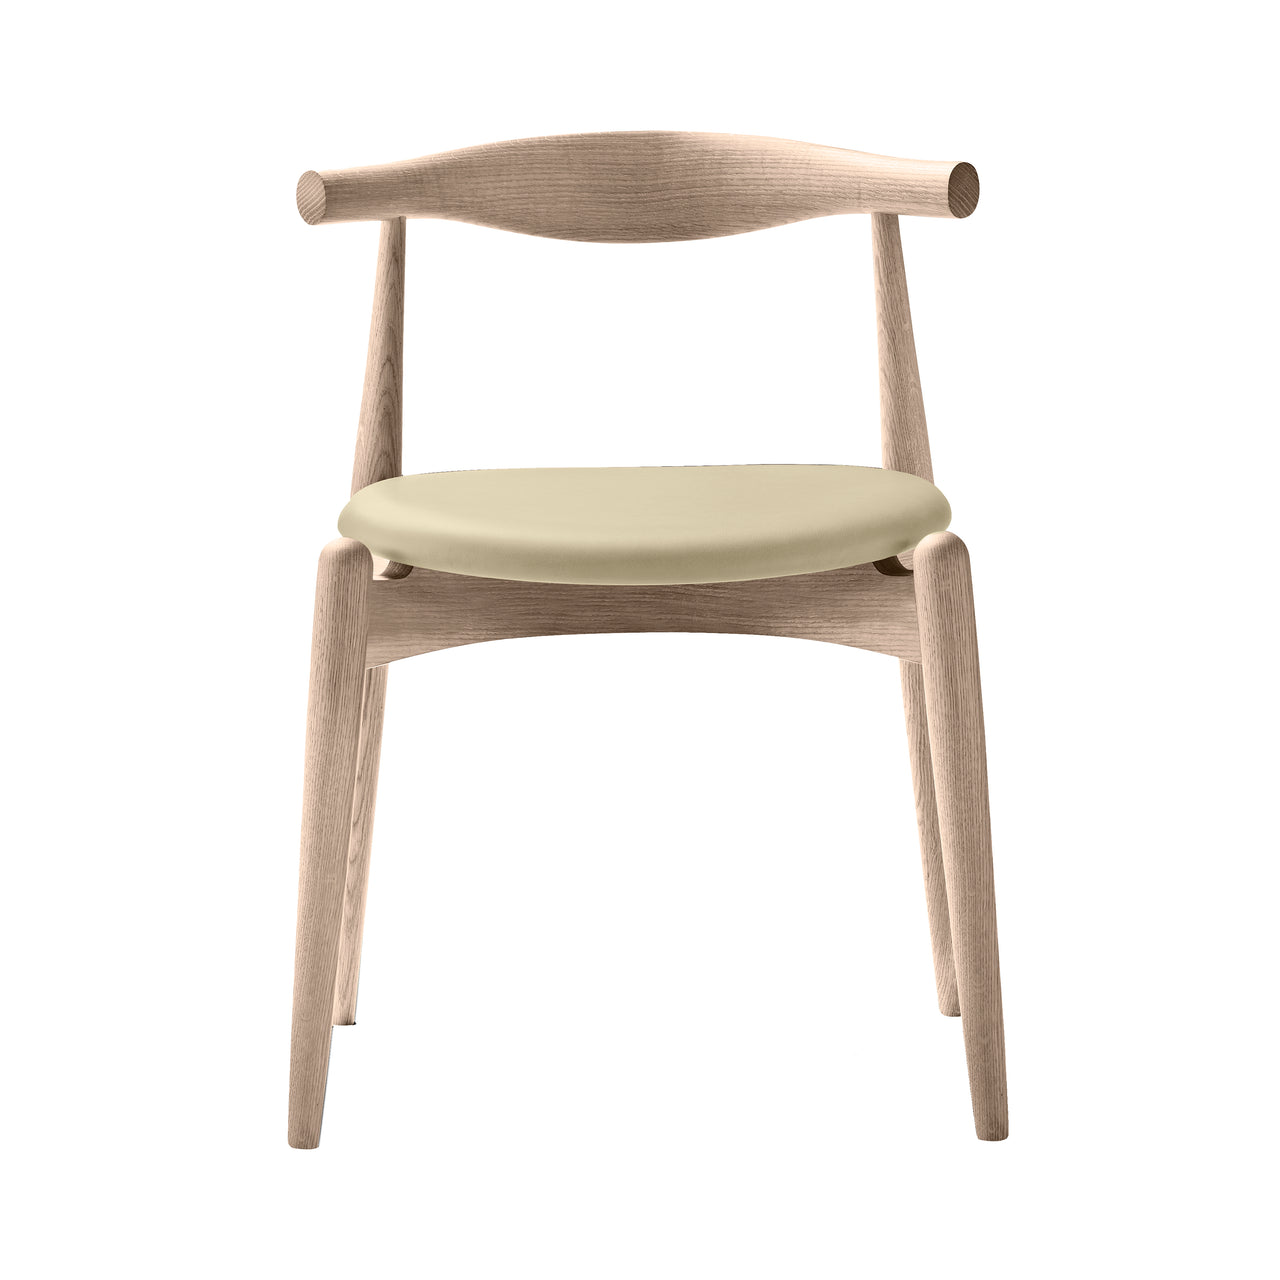 CH20 Elbow Chair: Oak + Soaped Oak